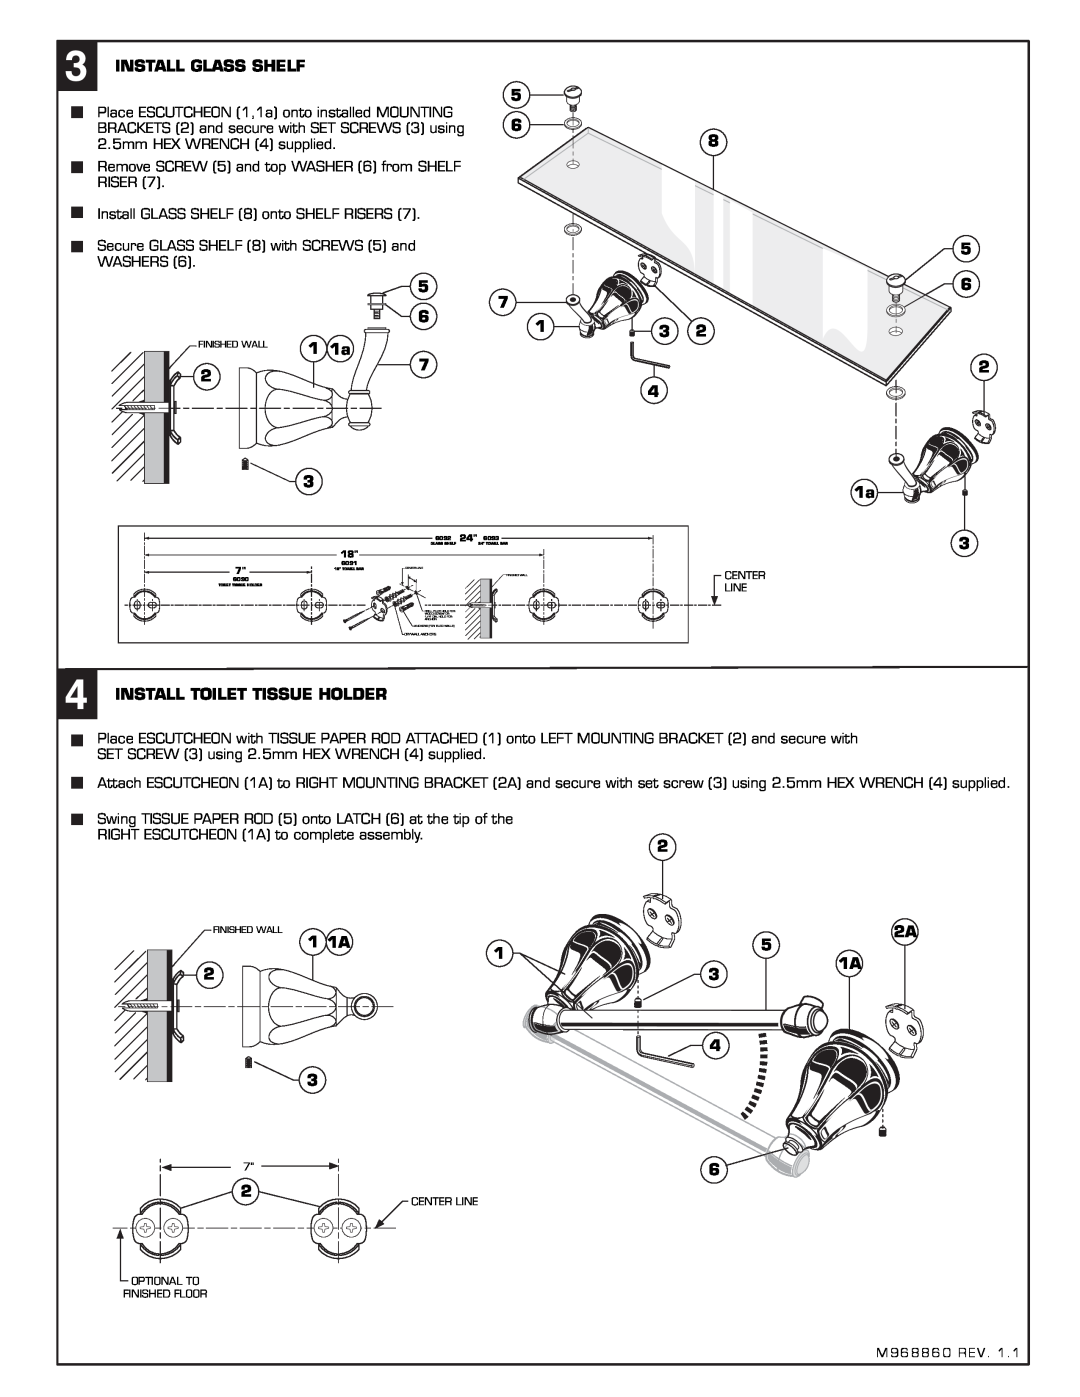 American Standard 6028.180 installation instructions 1 1a, Install Toilet Tissue Holder 